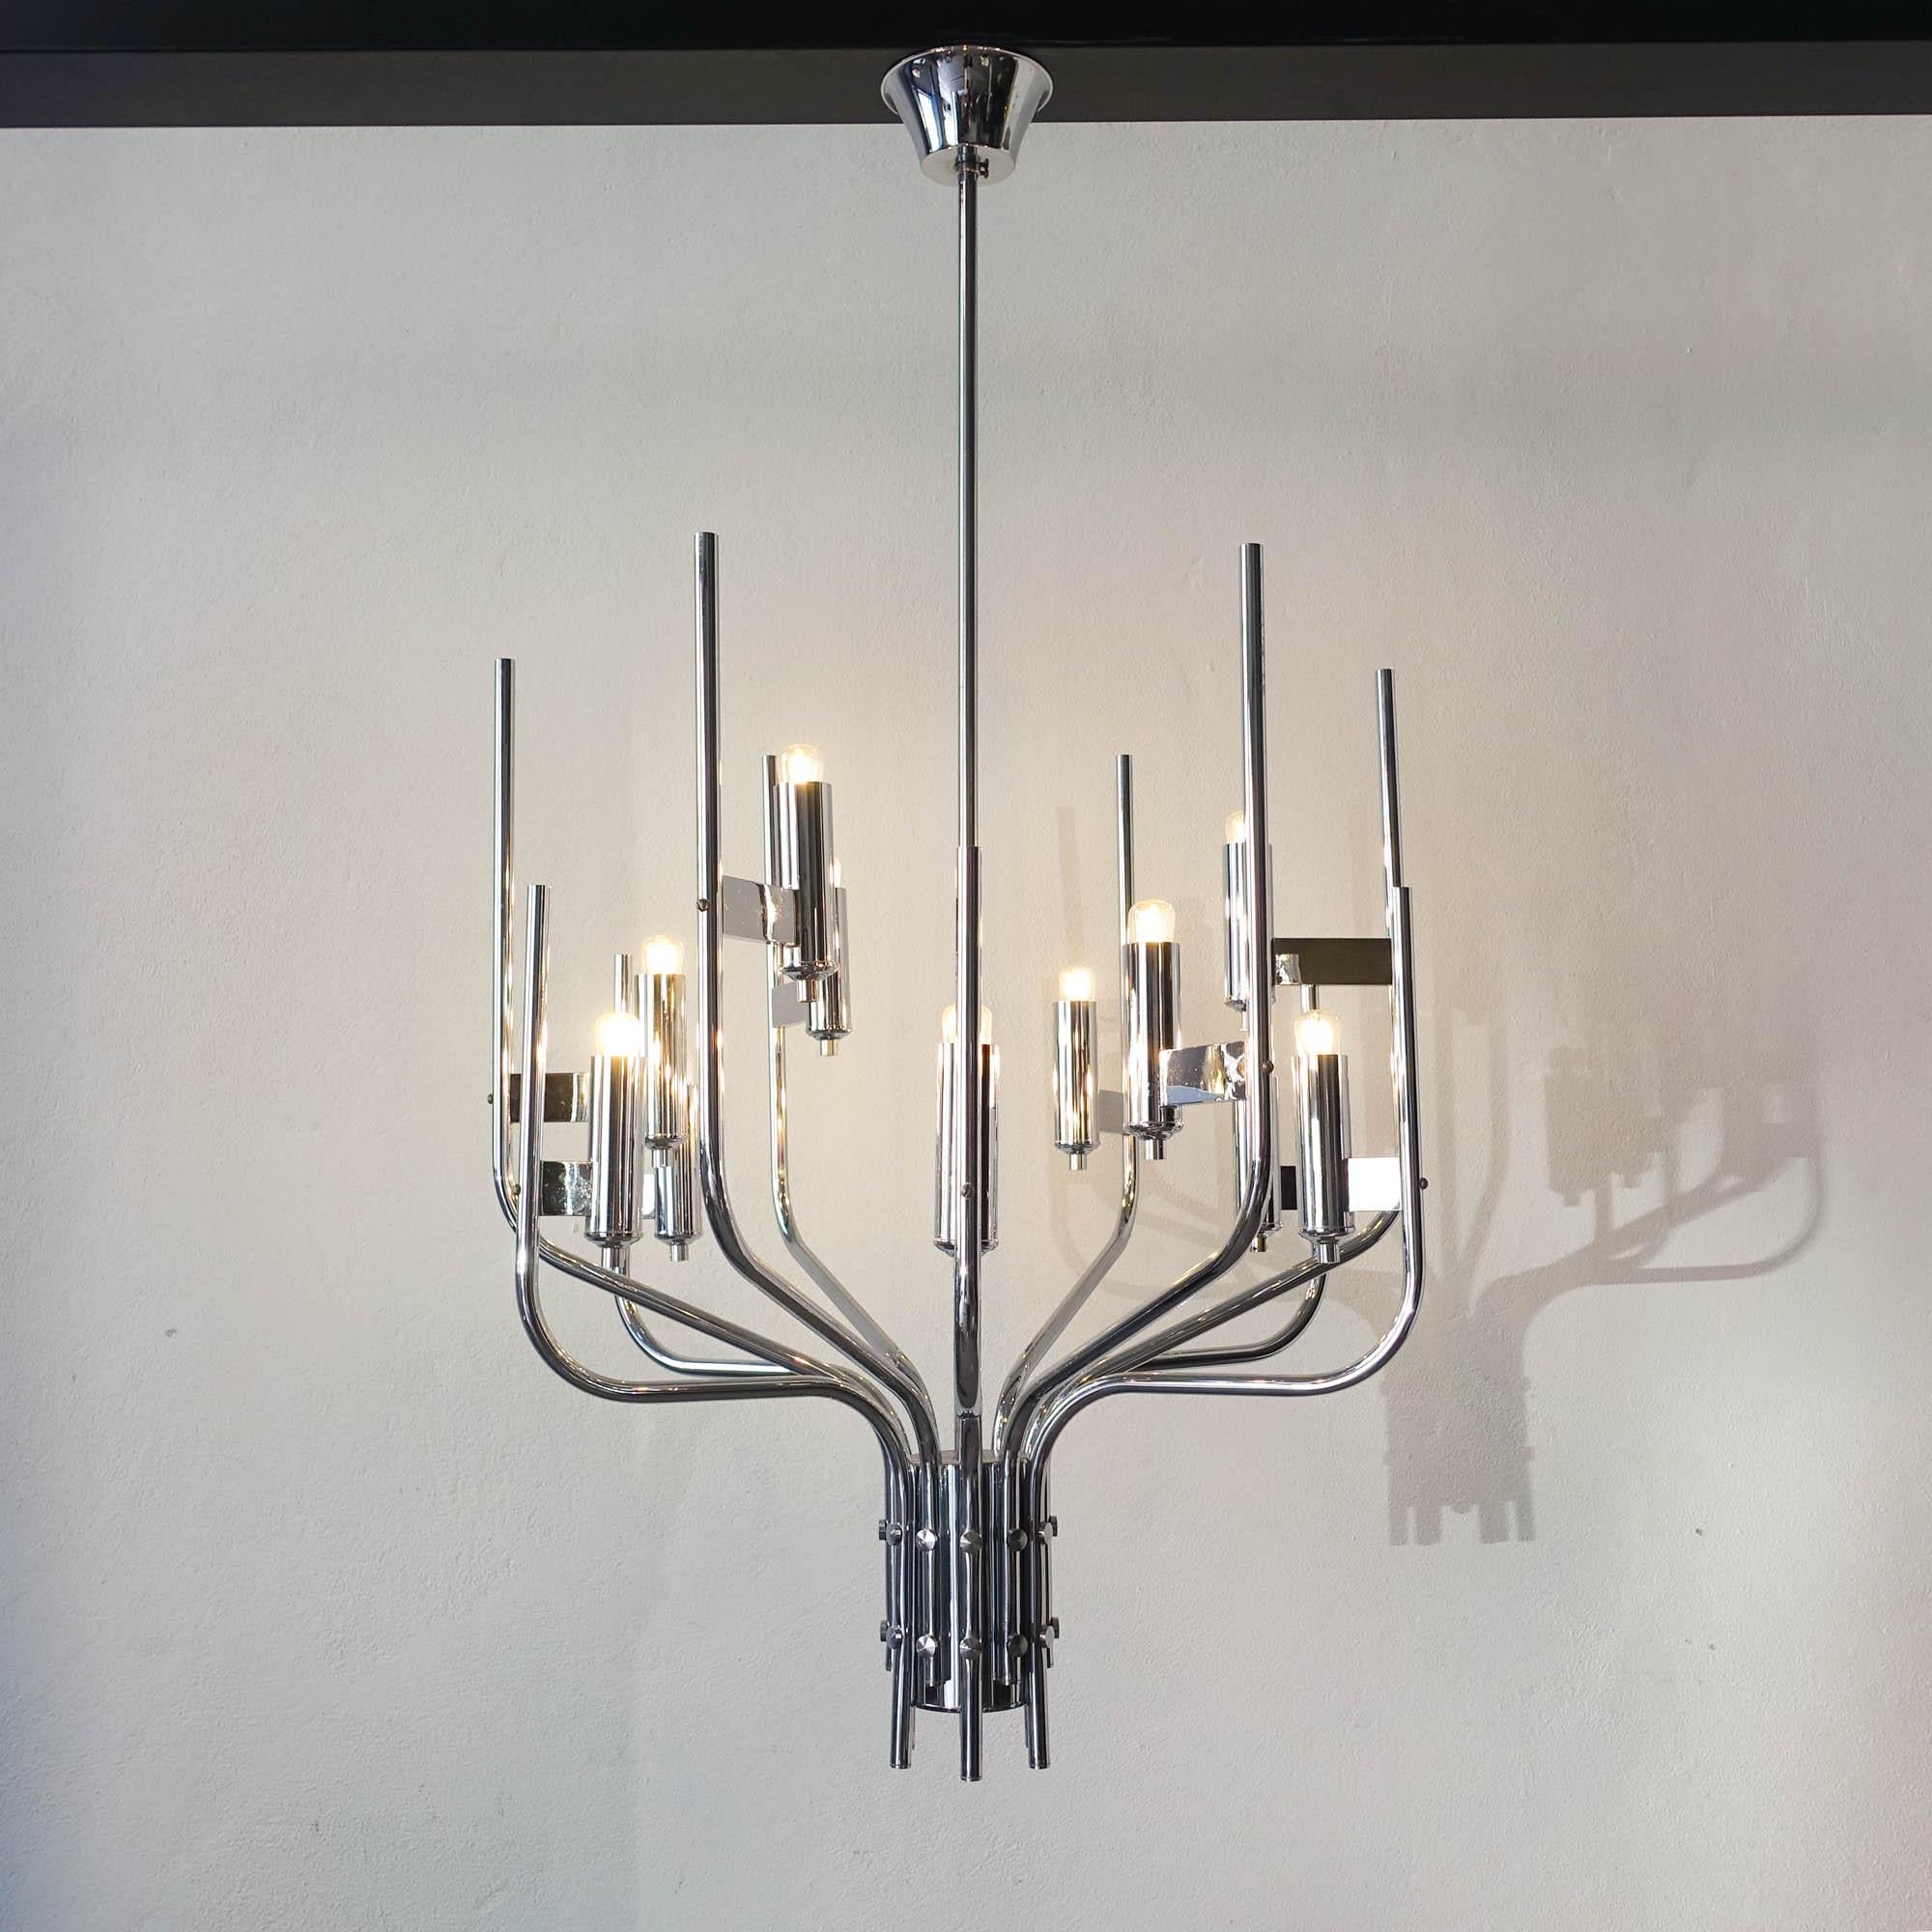 Dieses Stück wurde in den 1970er Jahren von Gaetano Sciolari in Italien entworfen. Er hat ein minimalistisches Design, inspiriert von alten Kronleuchtern. Die Leuchte hat einen verchromten Rahmen und benötigt 12 E14-Glühbirnen. Das elektrische